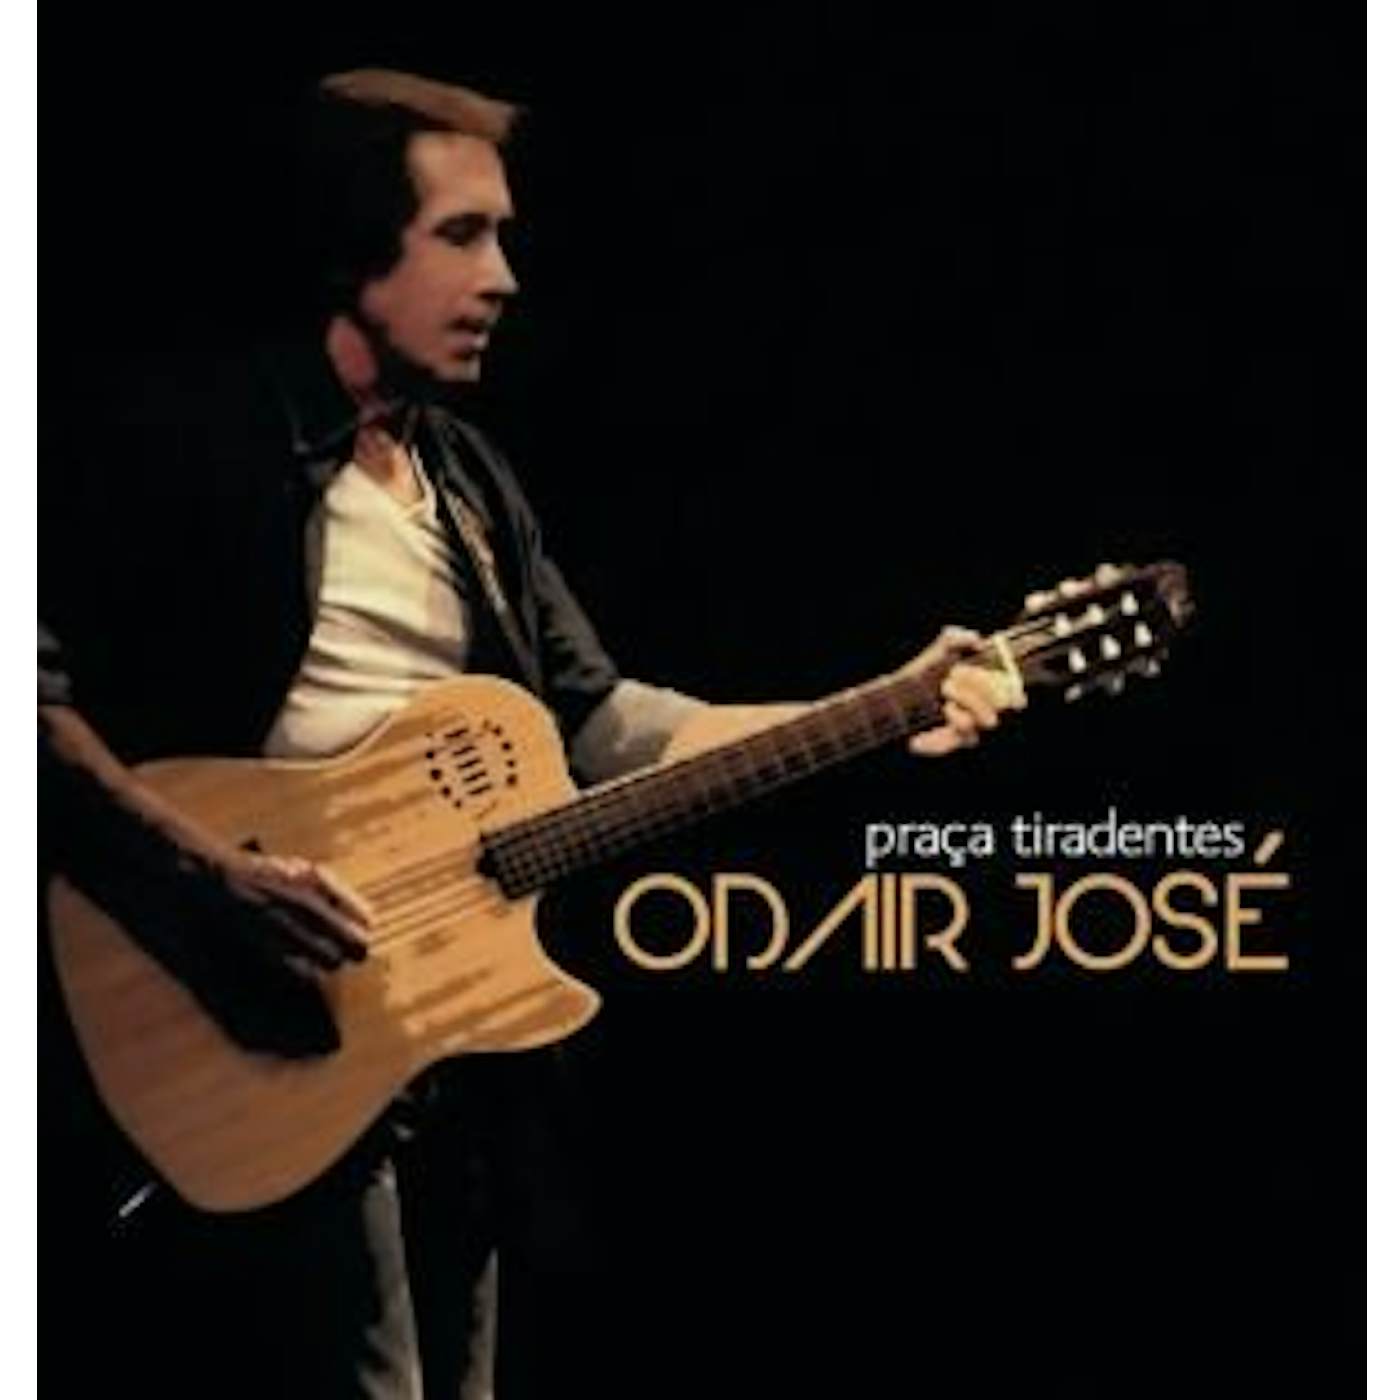 Odair Jose PRACA TIRADENTES CD